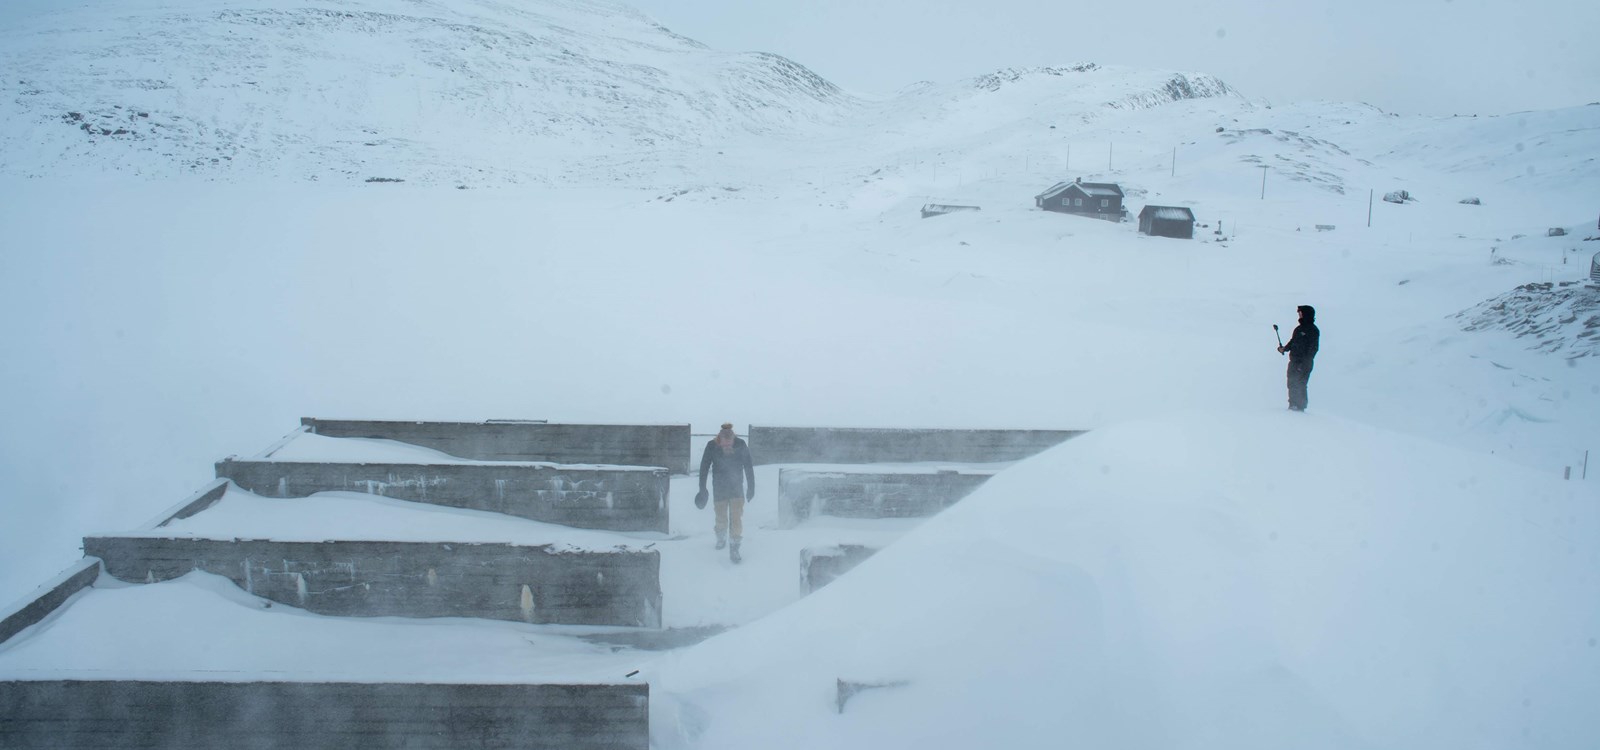 Natur og bygningar ved Tyin vert viktige i innspelinga av Kalandra sin musikkvideo «Waiting game». Foto: Arne Vidar Stoltenberg